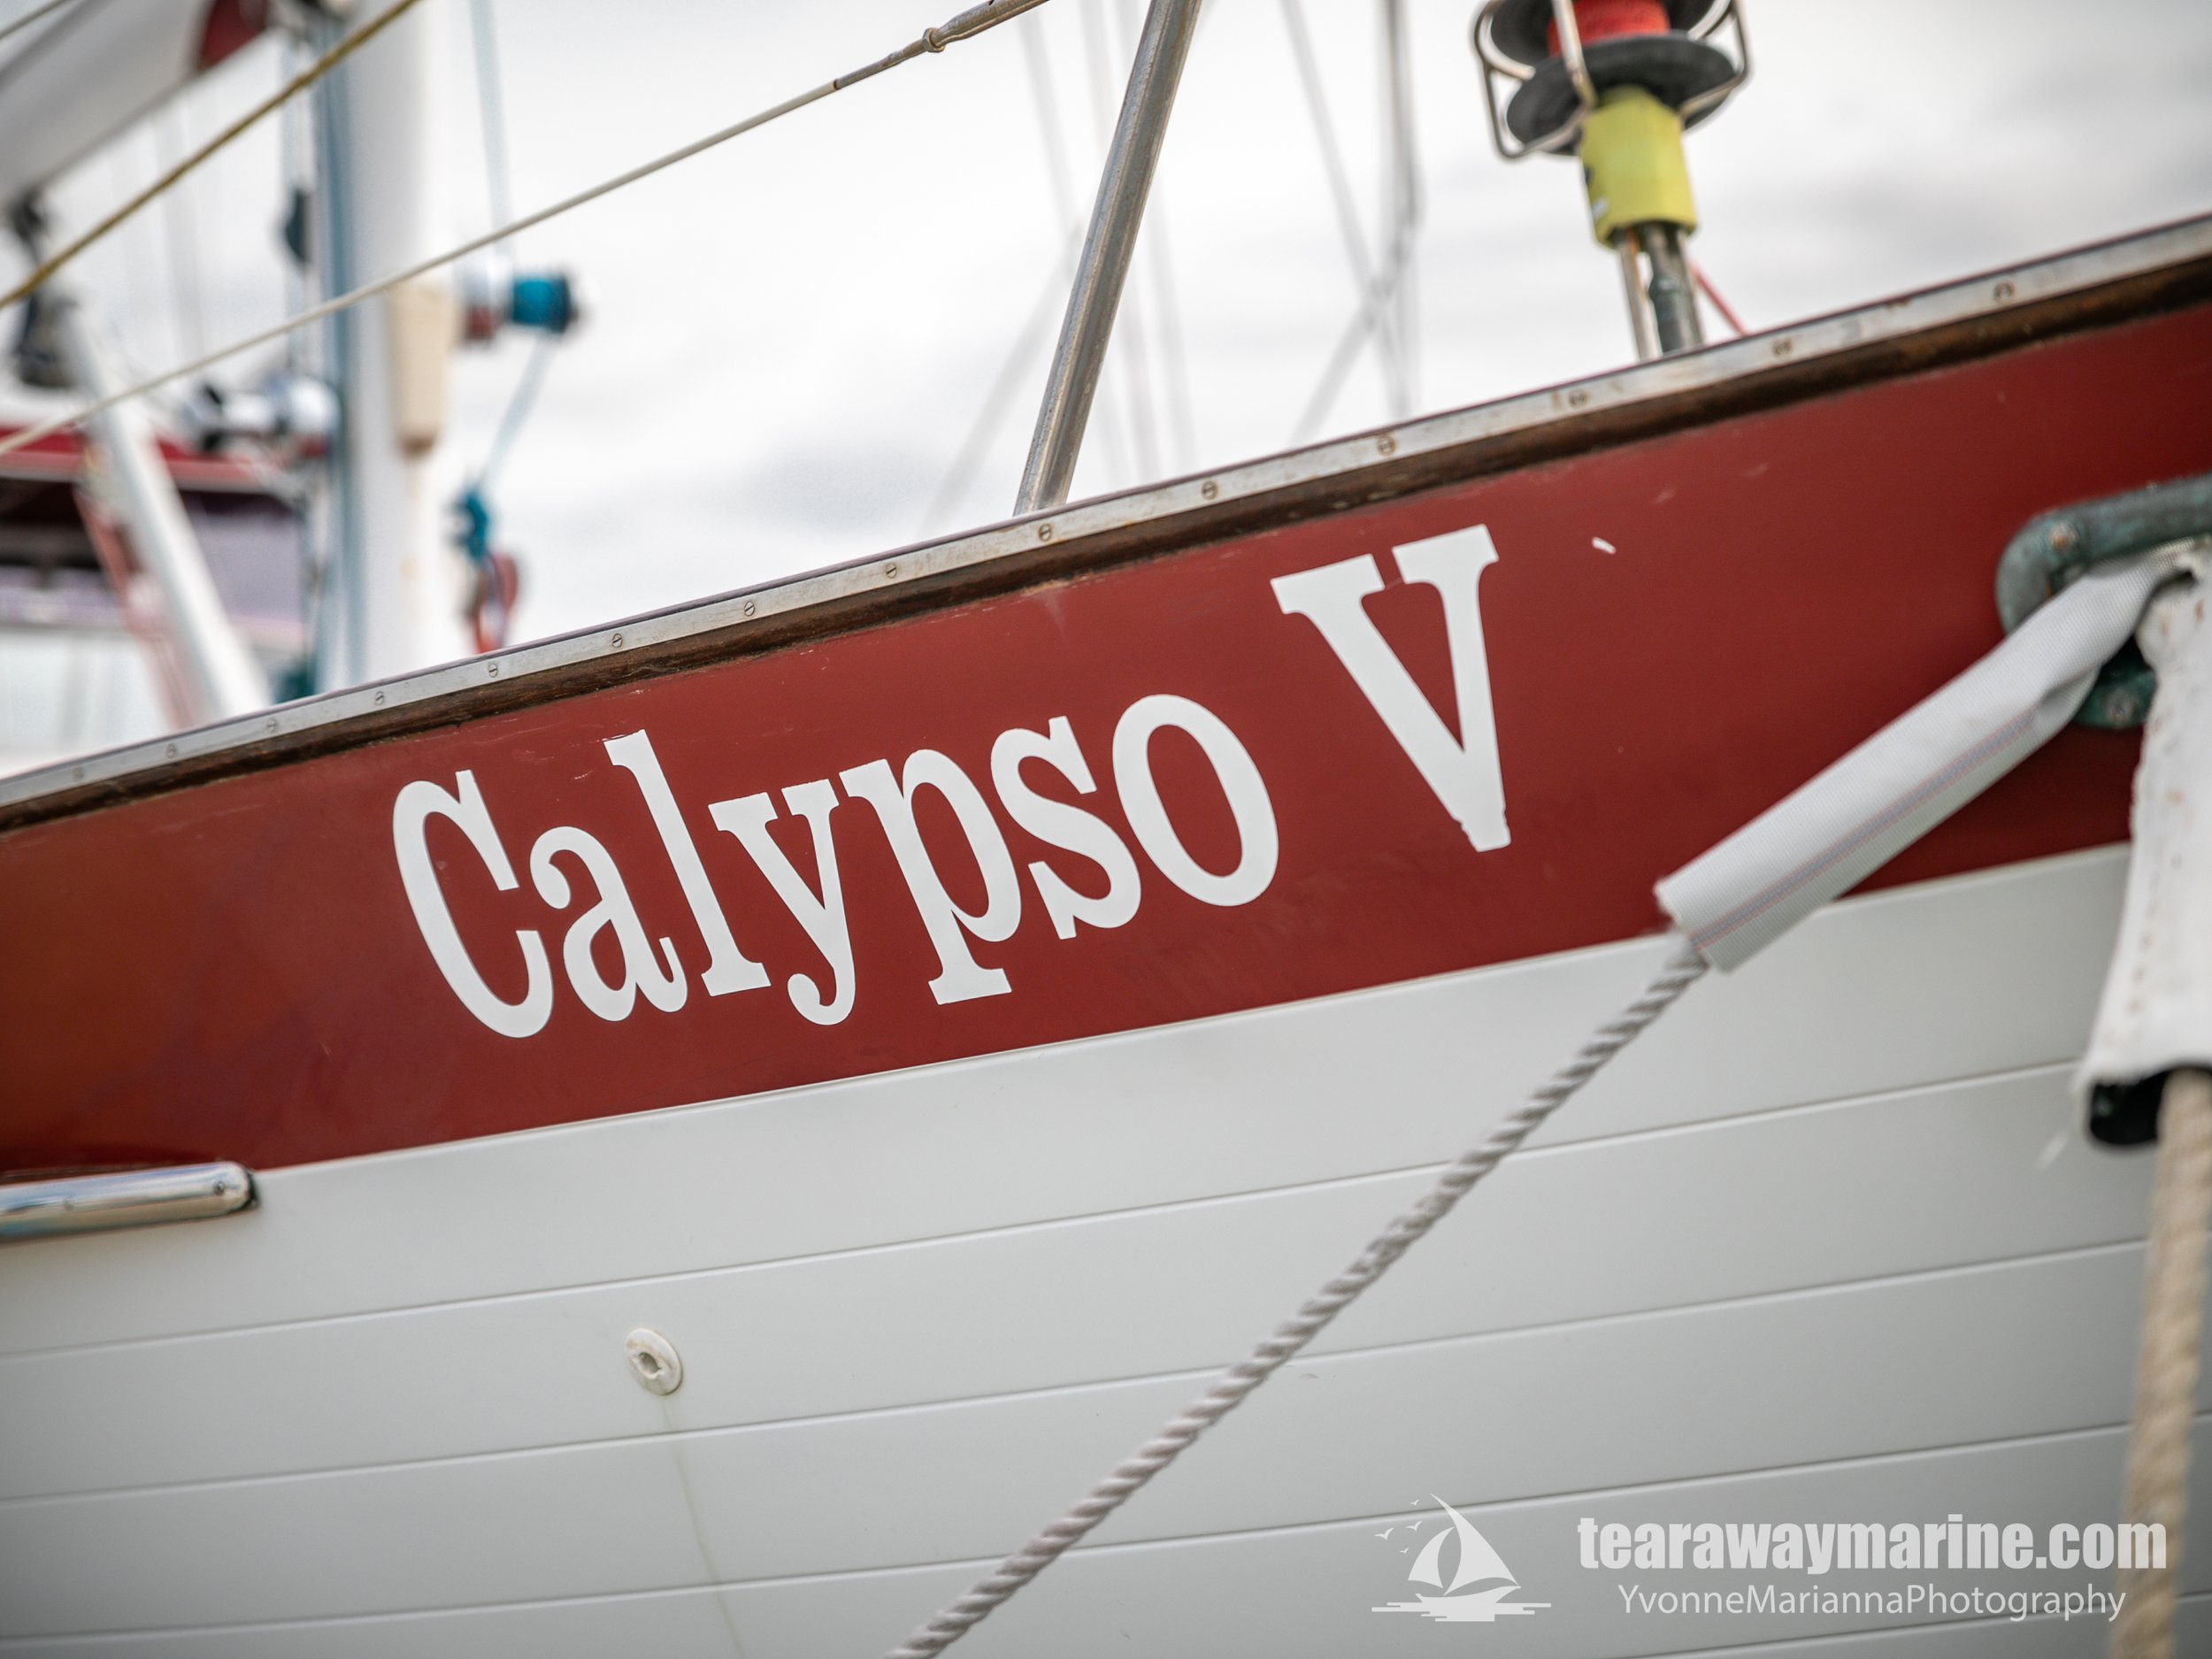 Calypso Yacht Tearaway Marine - Yvonne Marianna Photography-17.jpg